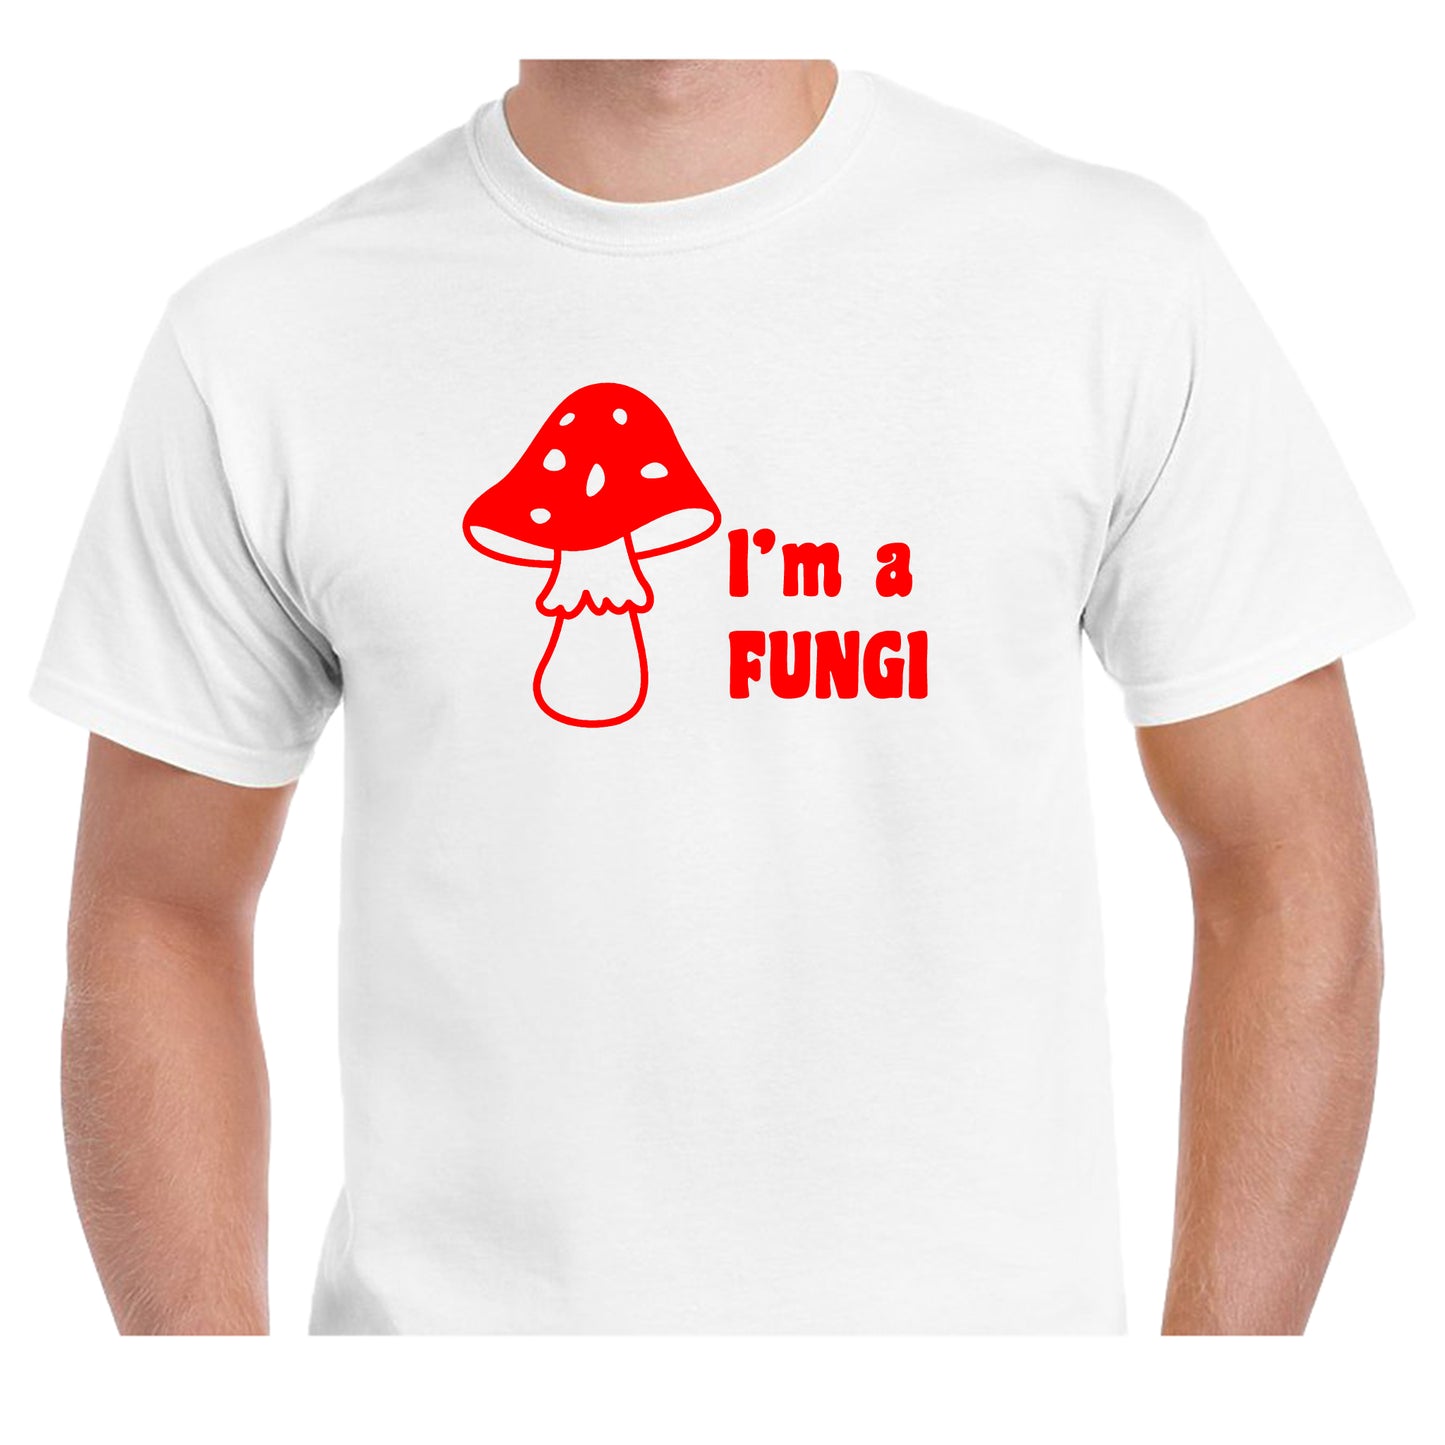 I'm a Fungi